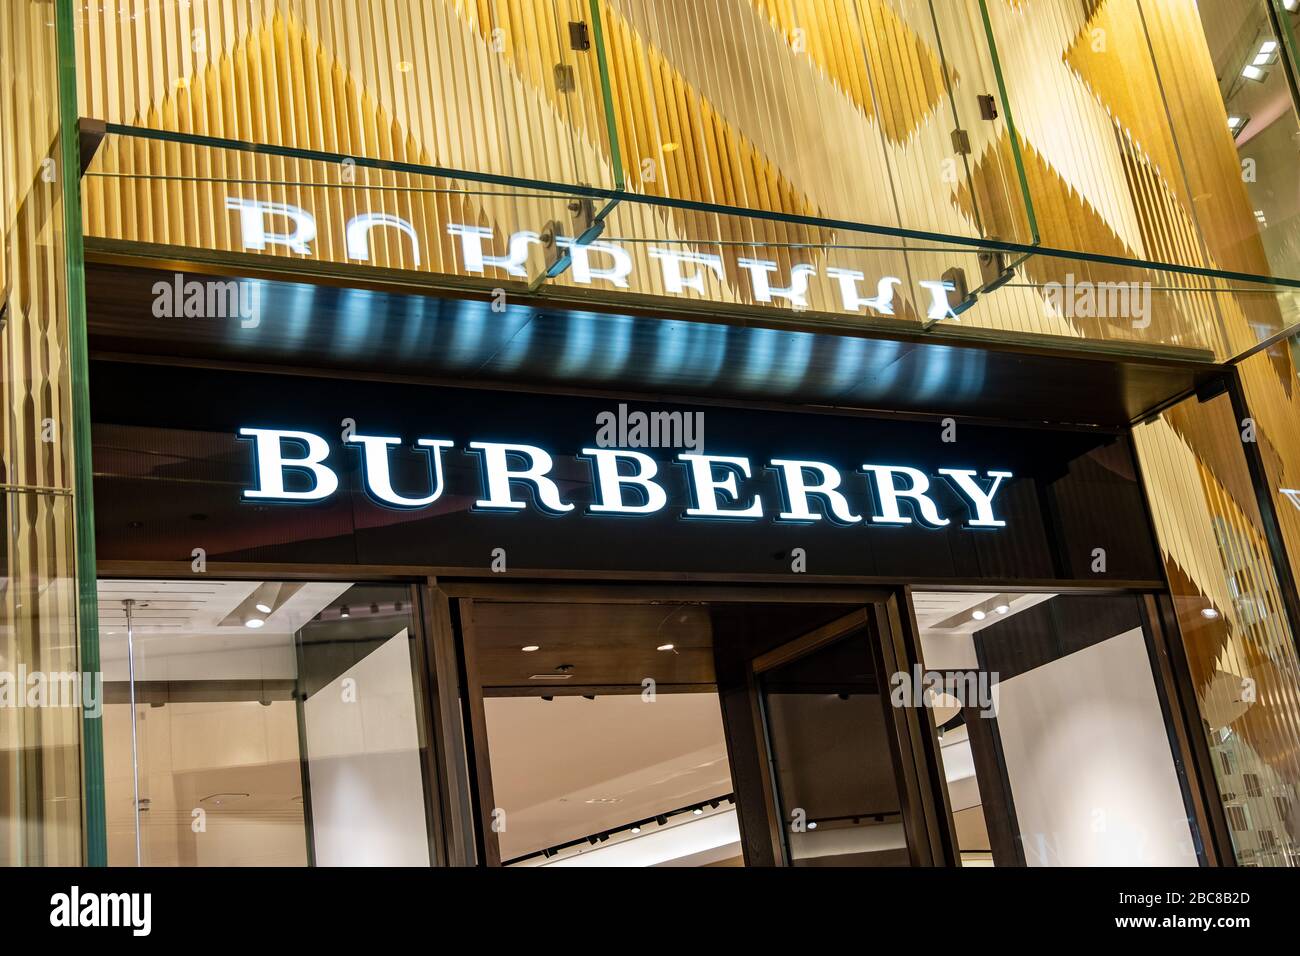 Burberry Store, une marque britannique de luxe, logo extérieur /  signalisation - Londres Photo Stock - Alamy